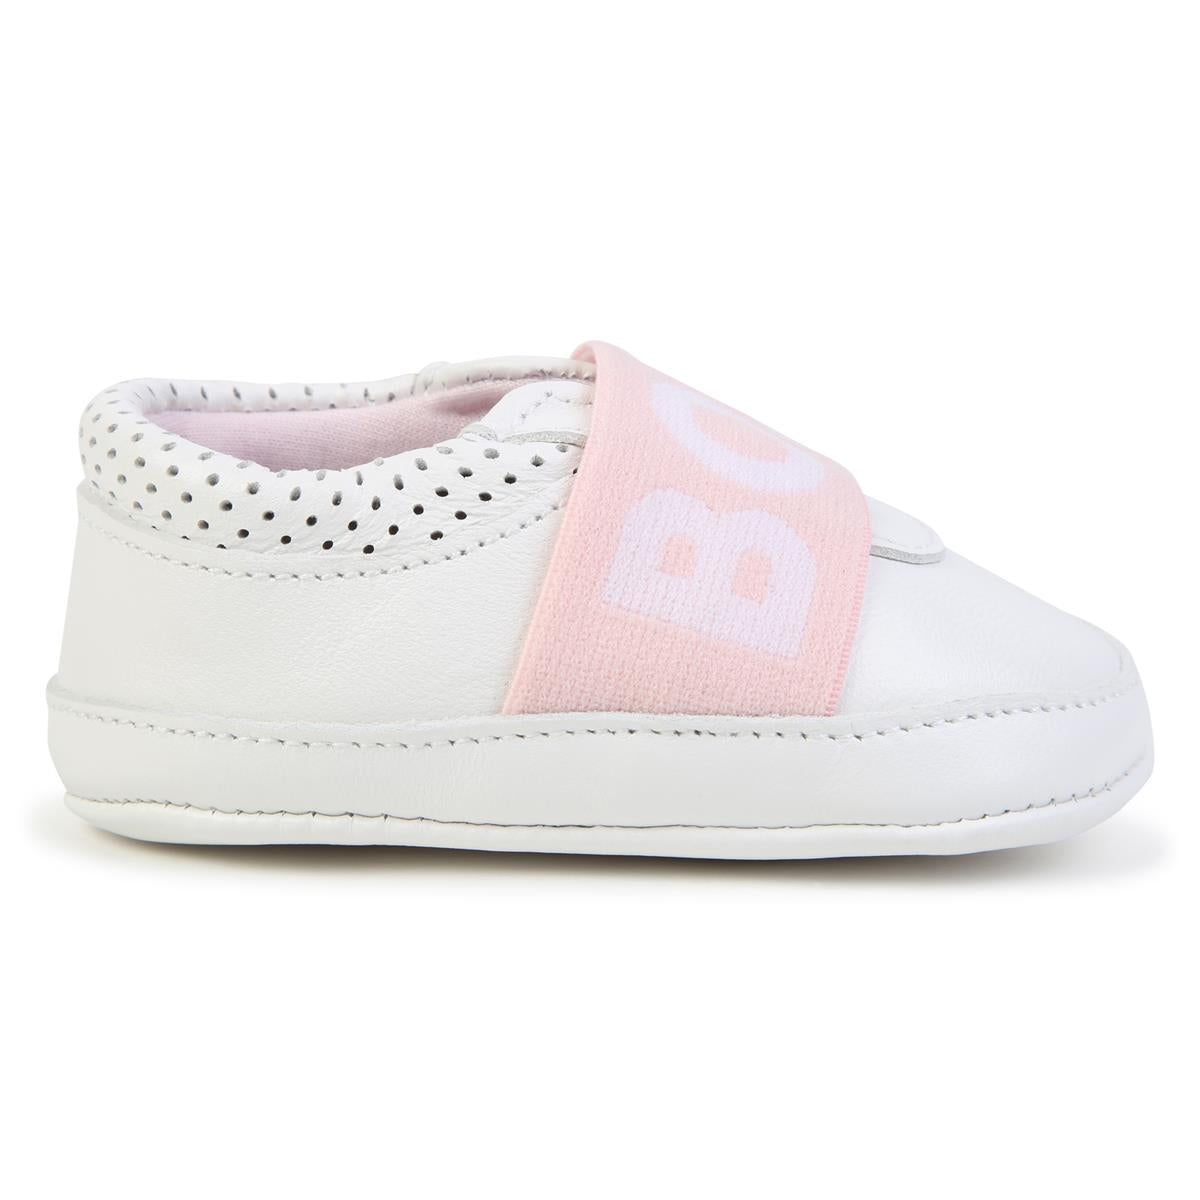 Baby Girls White Flat Shoes